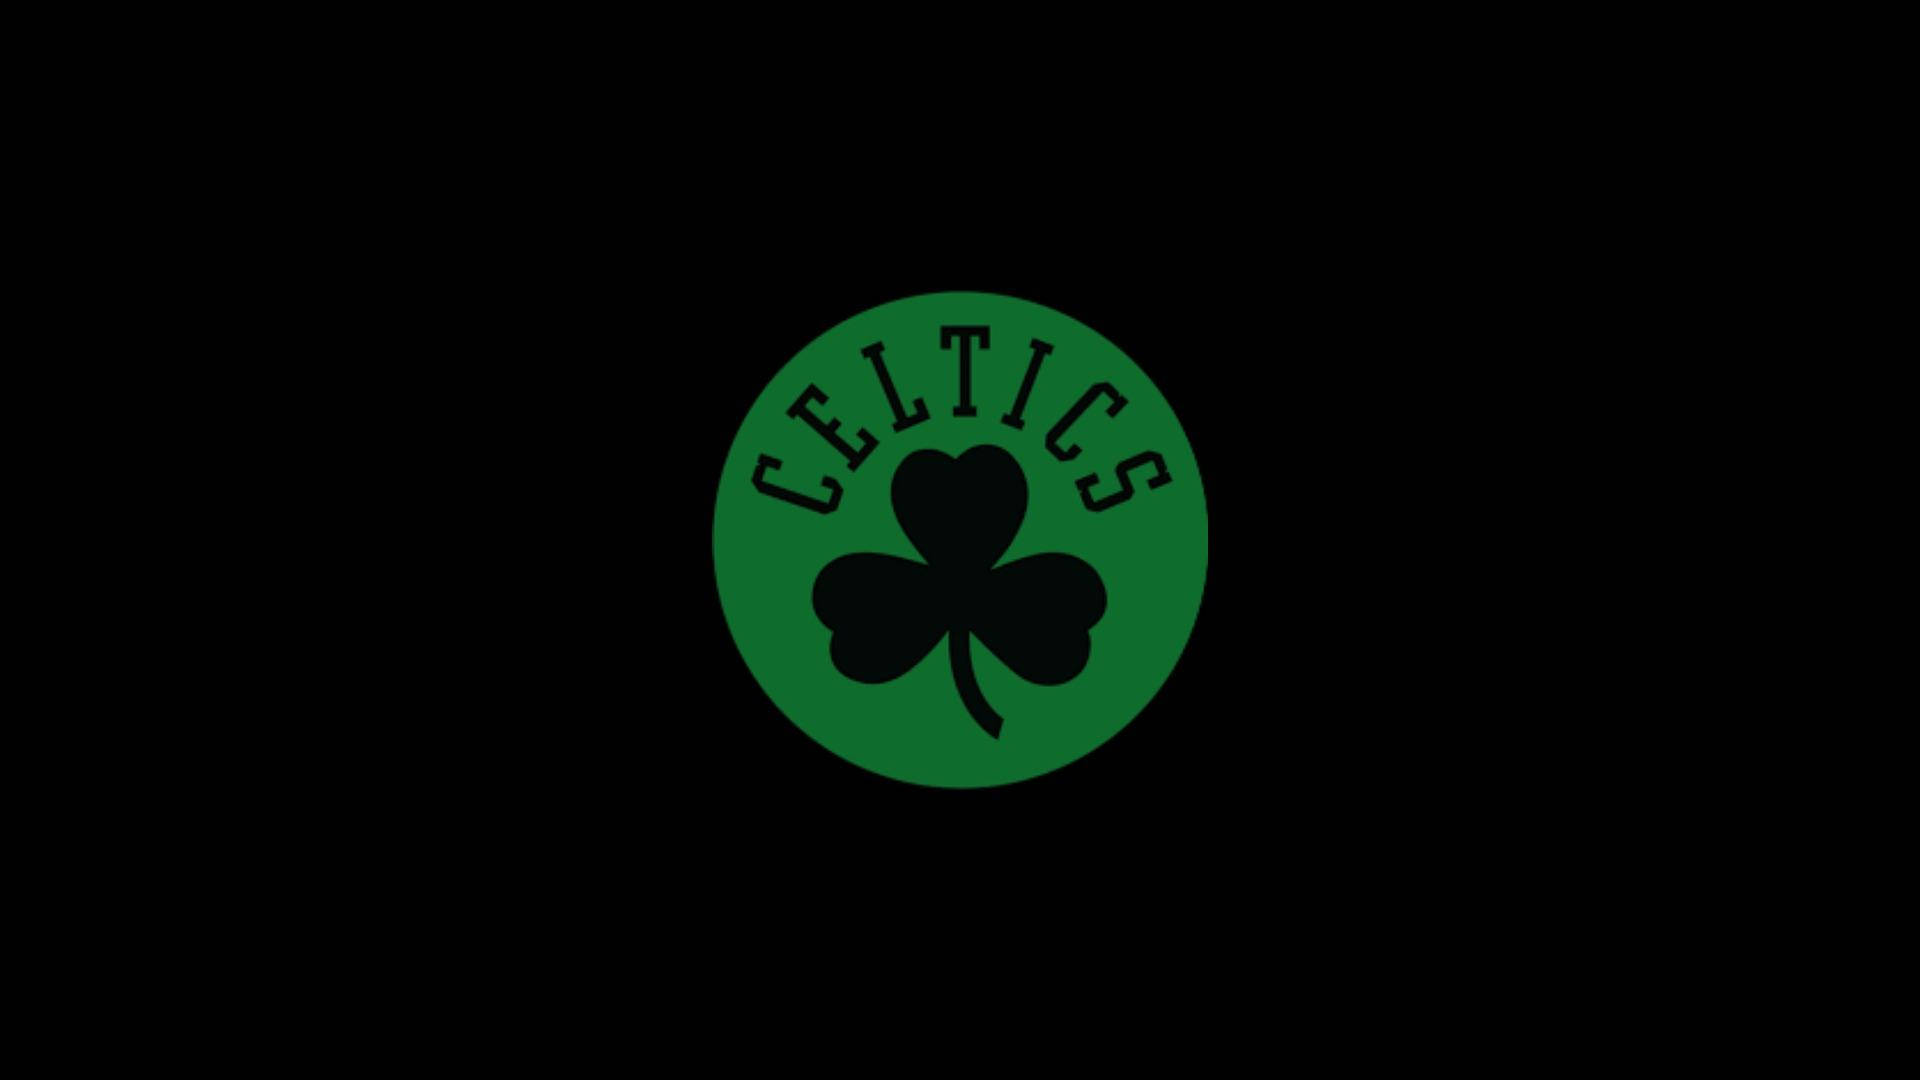 Boston Celtics Dark Logo Wallpaper